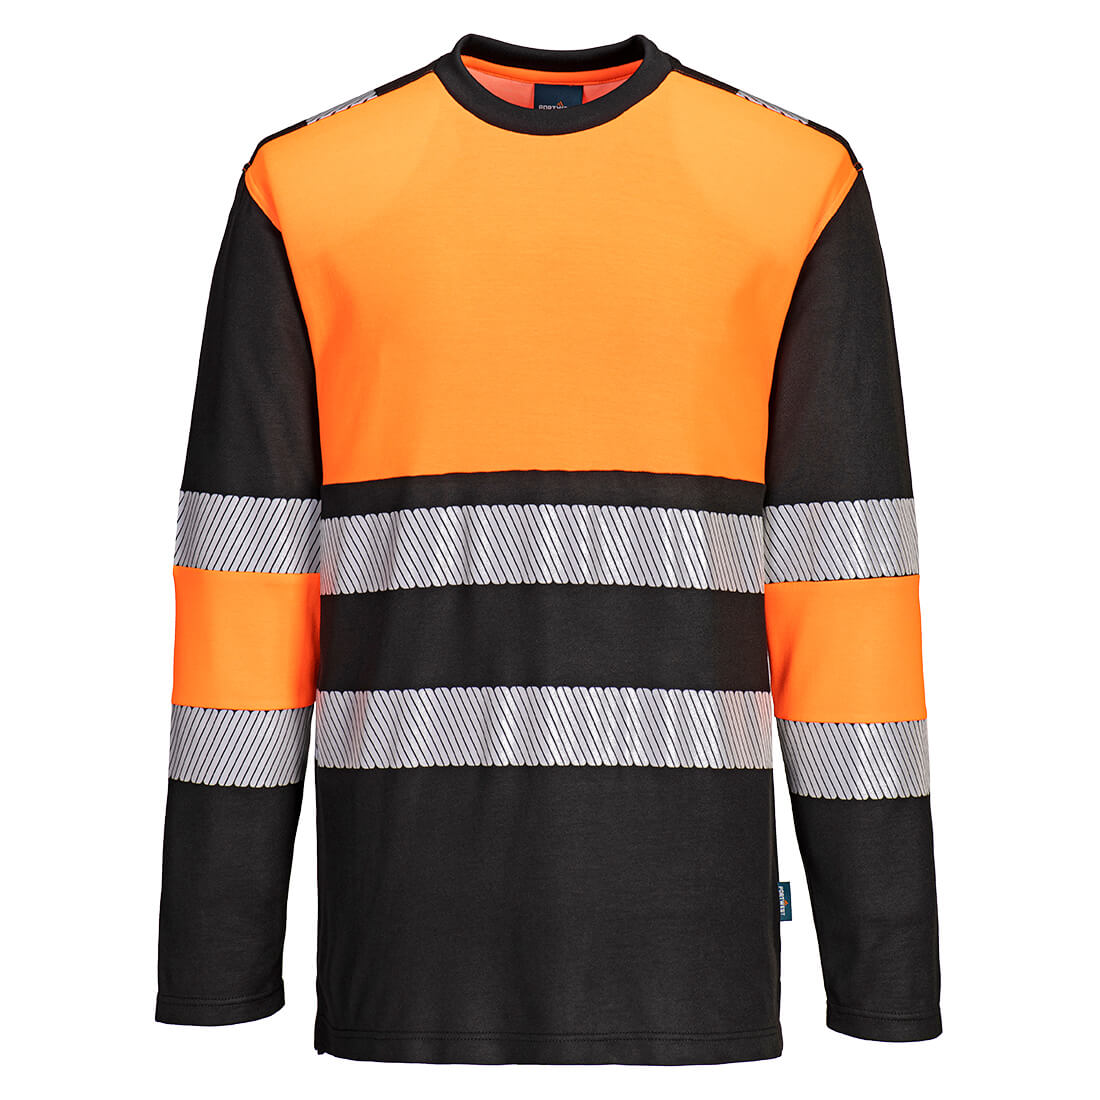 Portwest PW3 Hi-Vis Cotton Comfort Class 1 T-Shirt Orange/Black